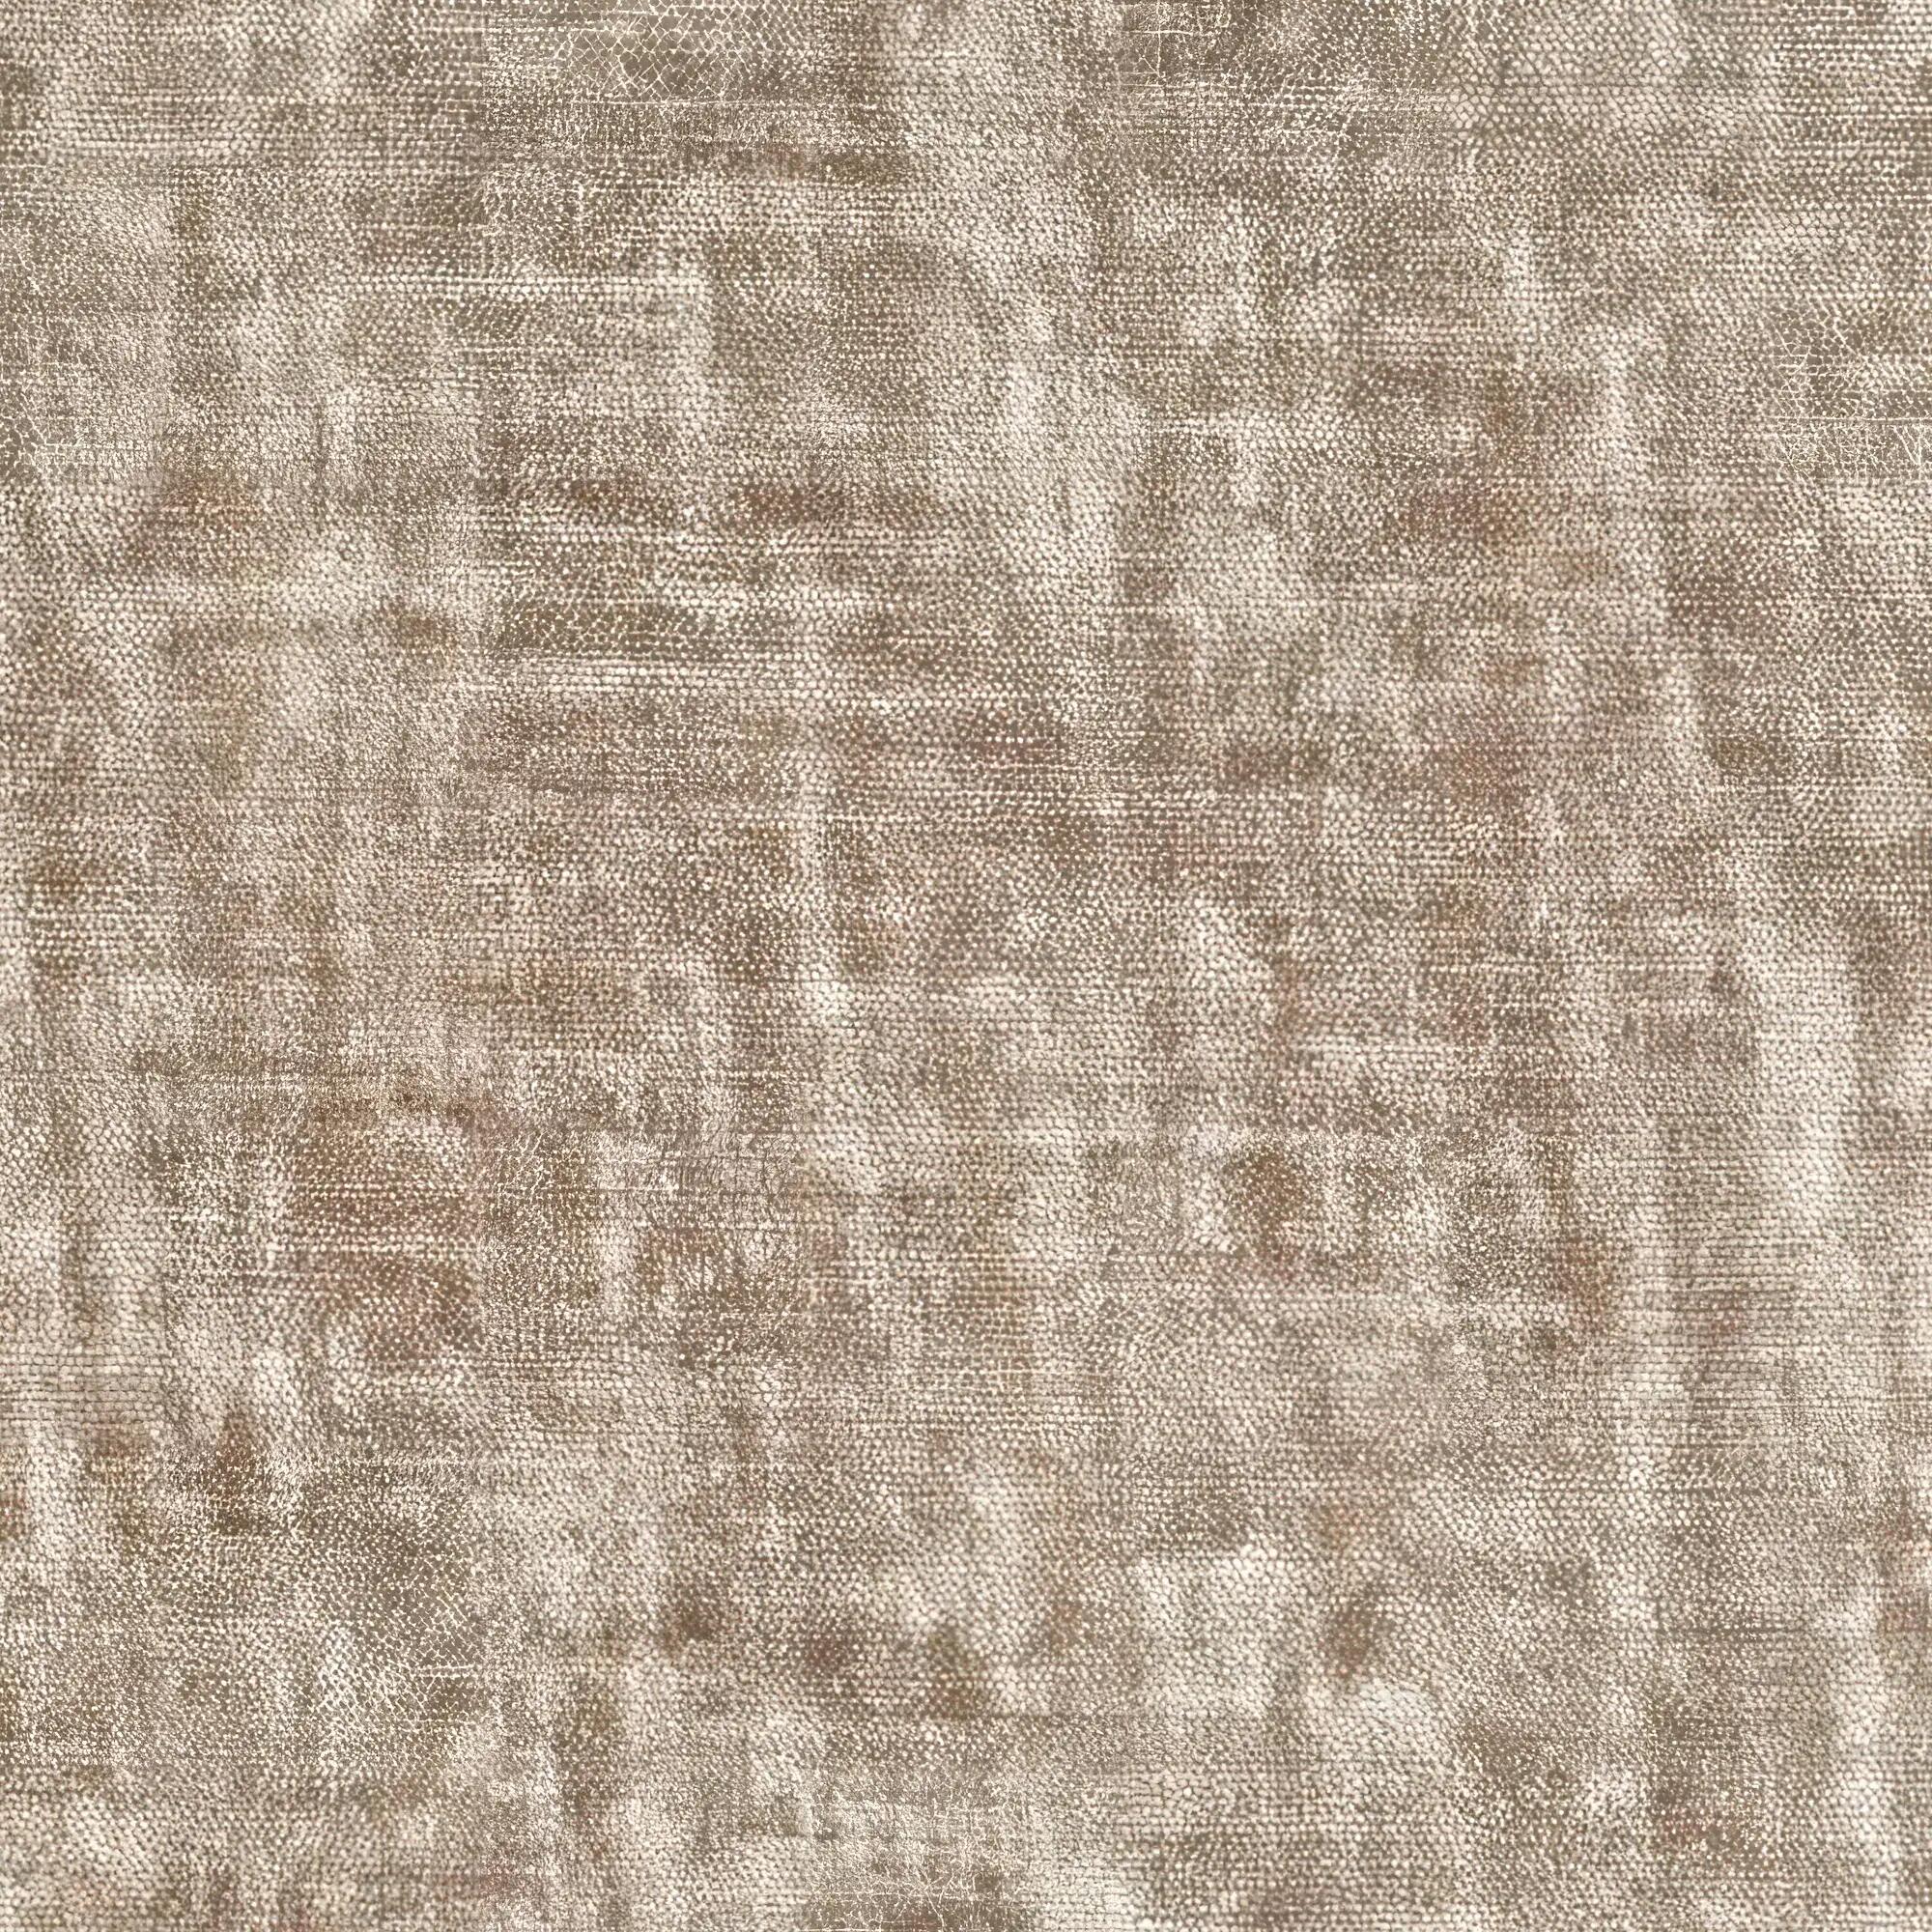 Tela al corte tapicería chenilla york camel ancho 275 cm